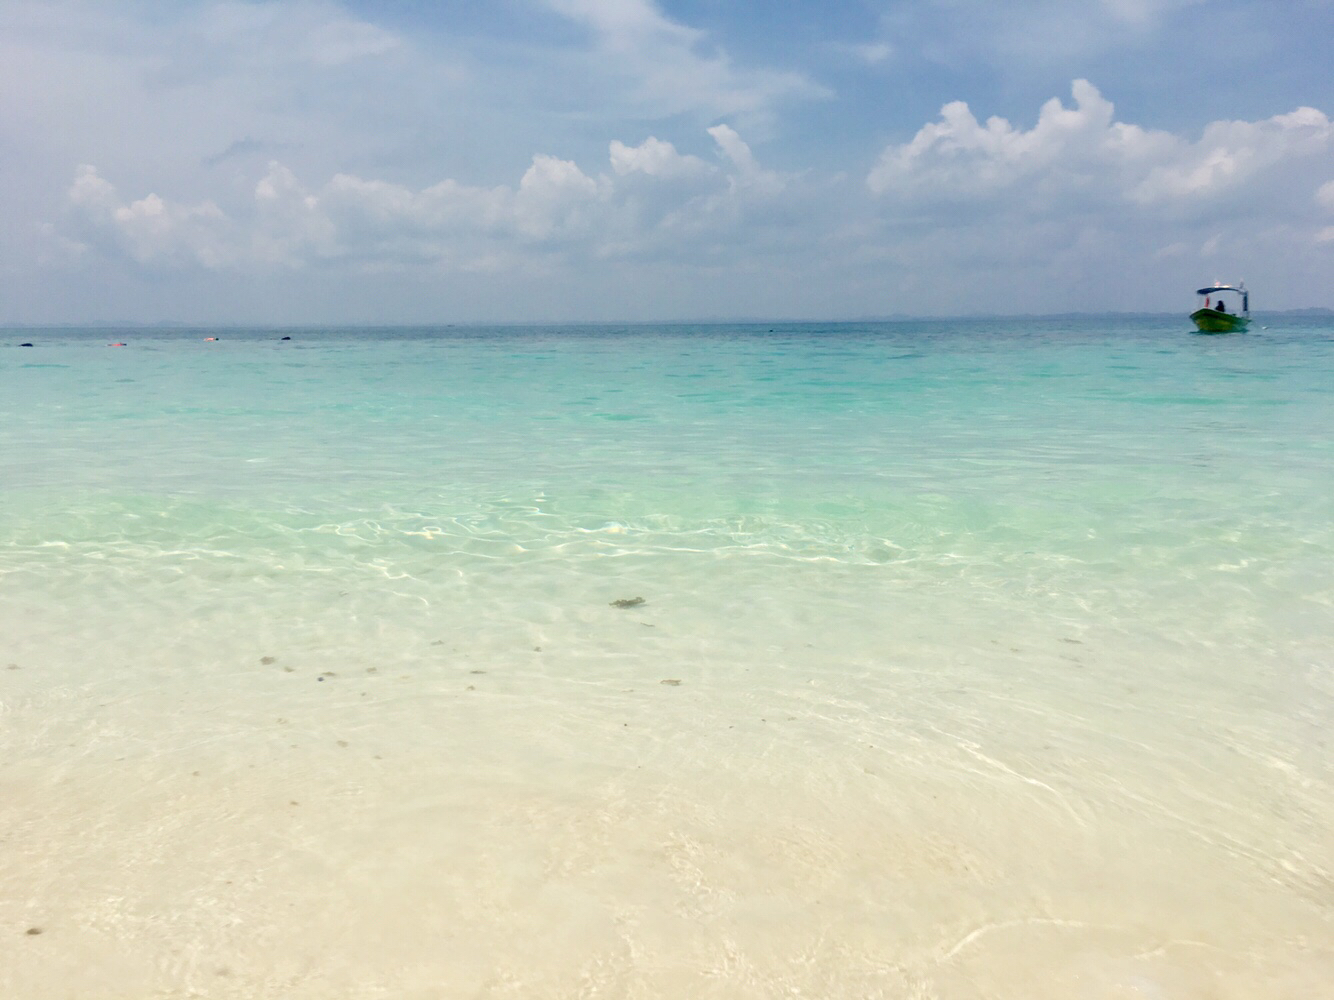 Pulau Hujung beach'in fotoğrafı turkuaz saf su yüzey ile